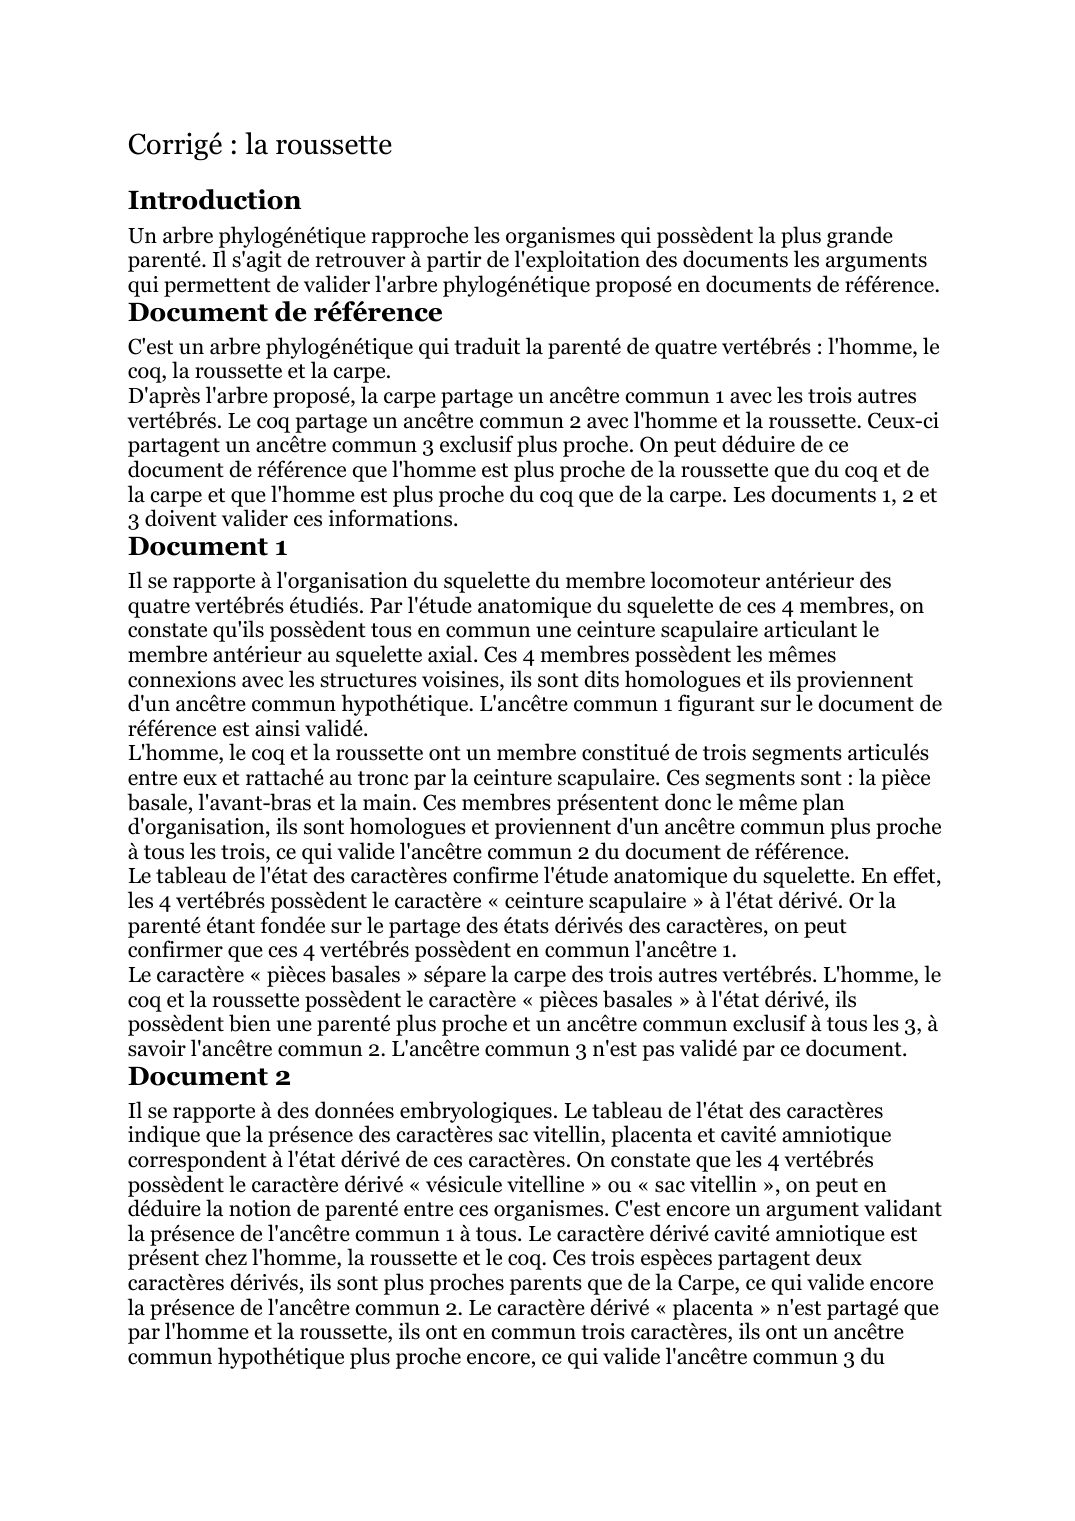 Prévisualisation du document La roussette